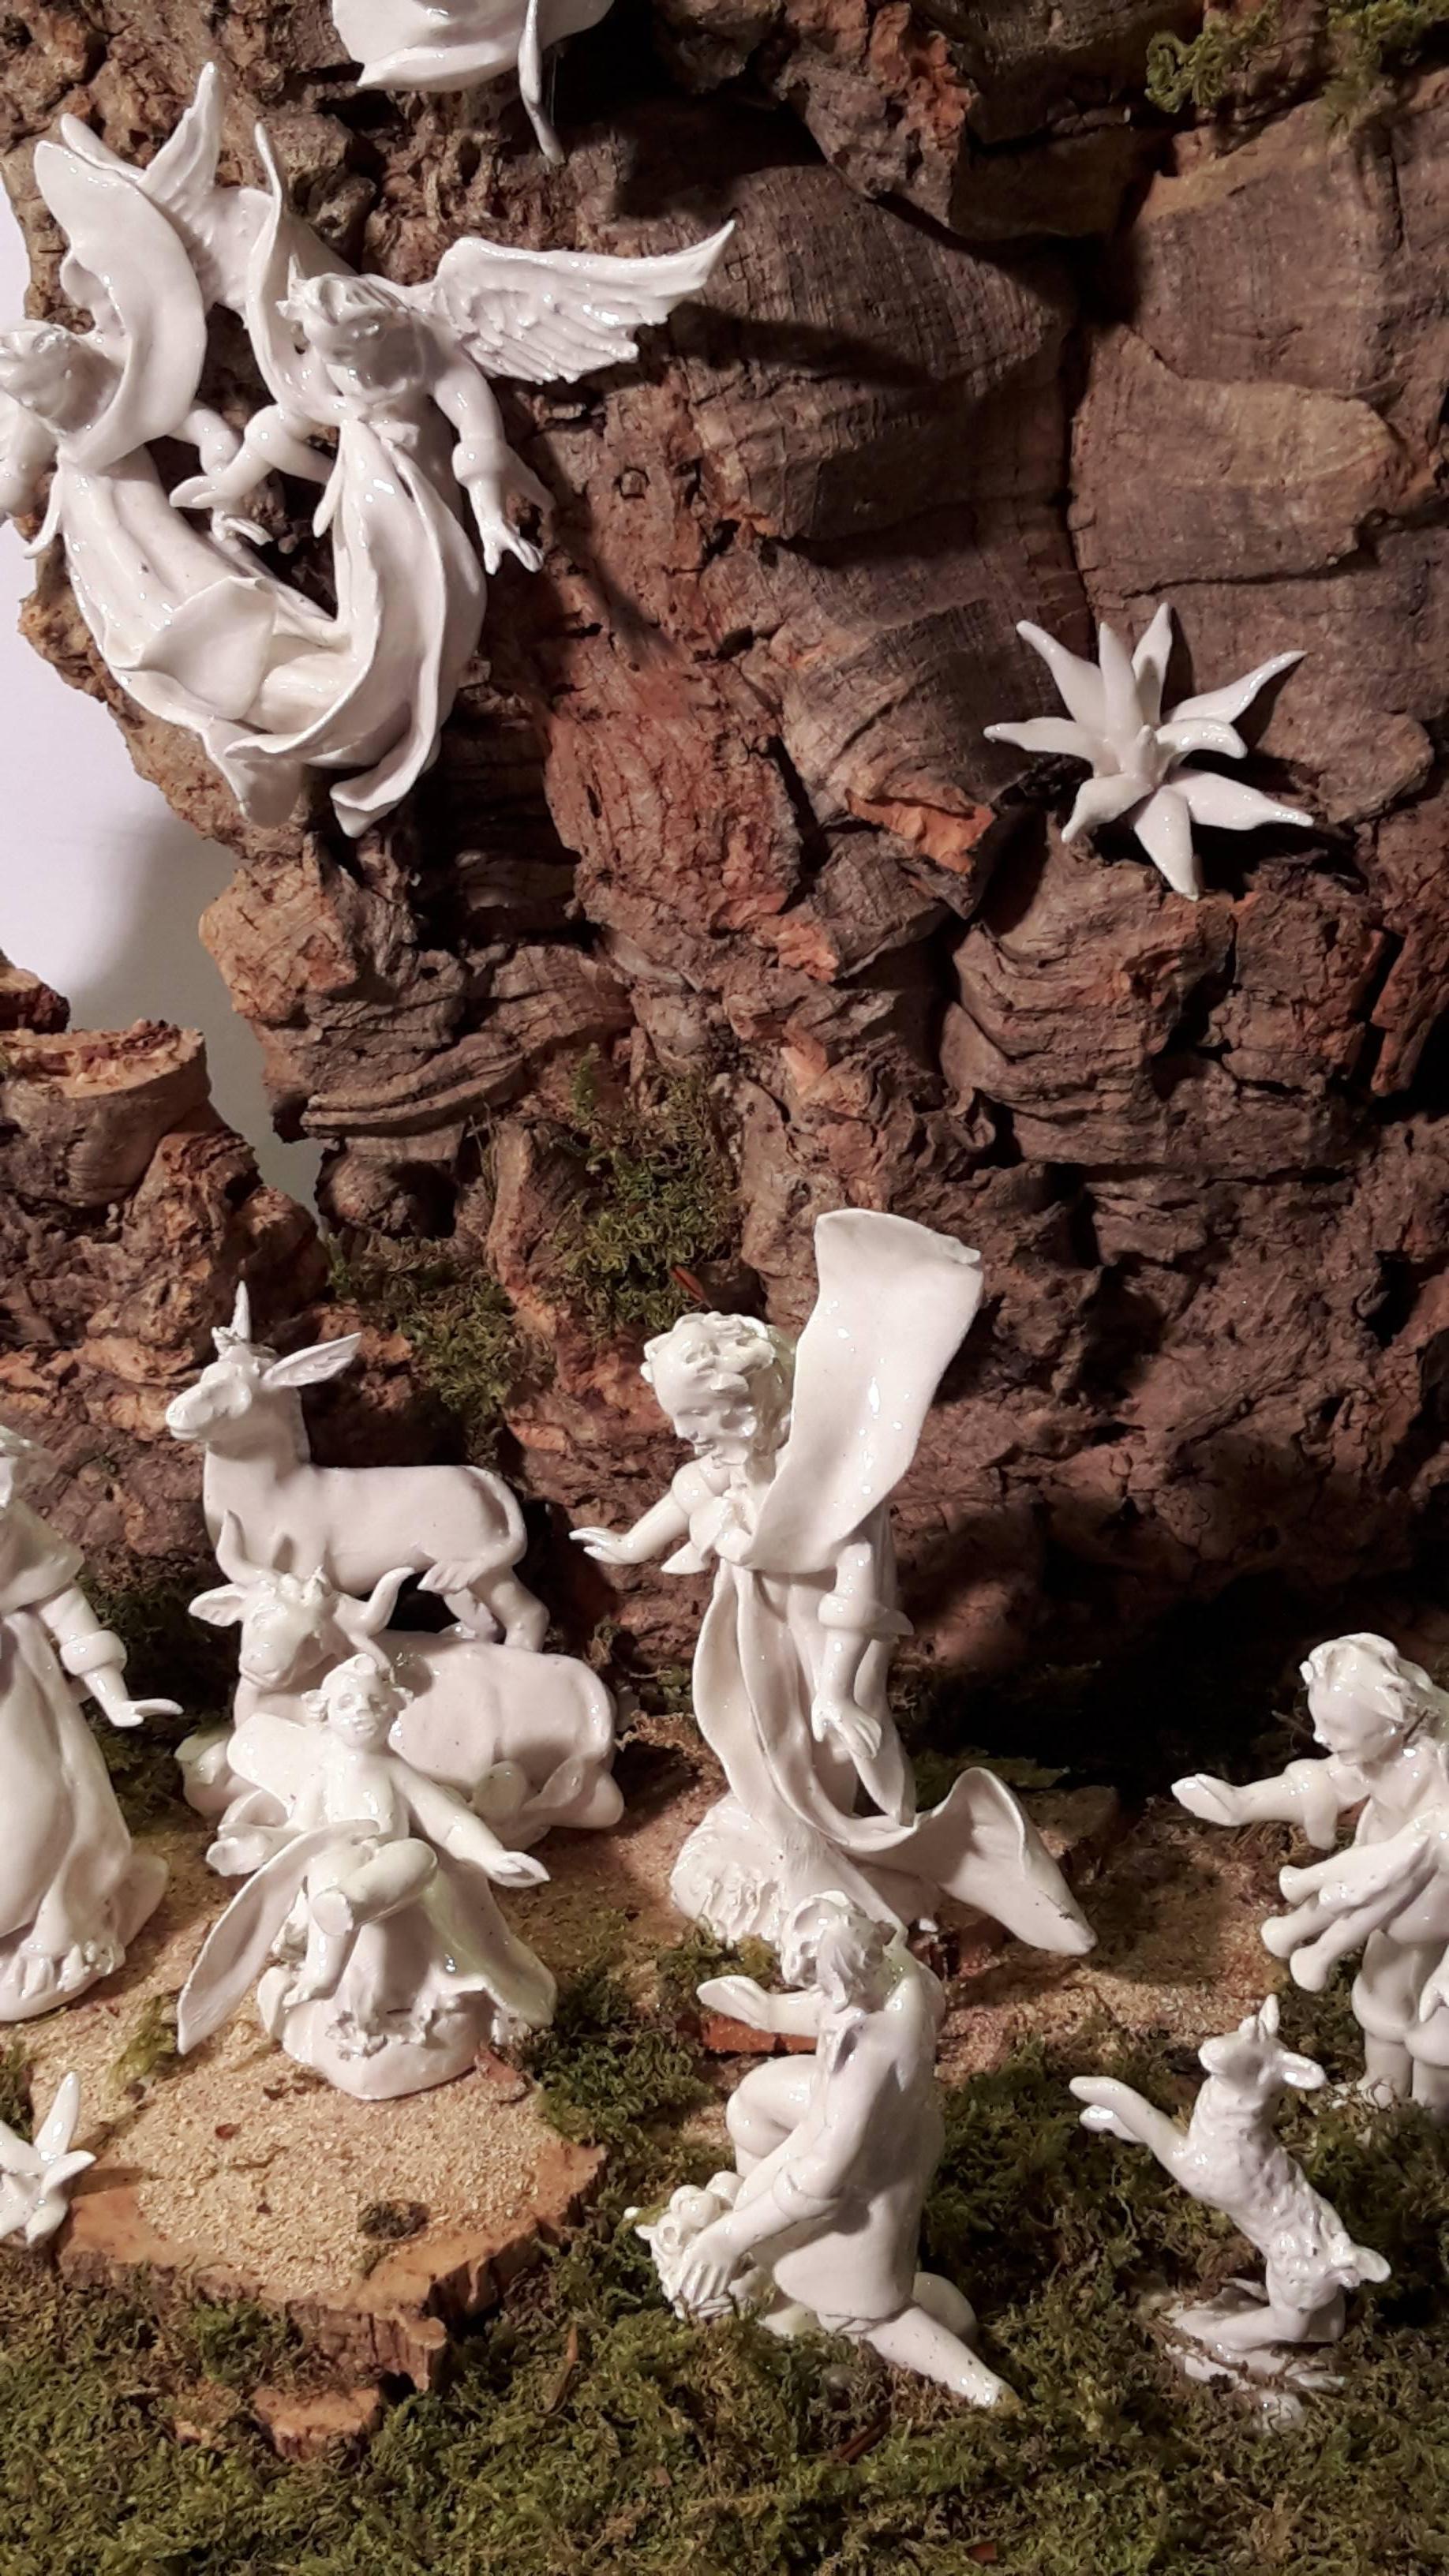 Italian Contemporary Nativity Scene in the Style of Neapolitan Baroque